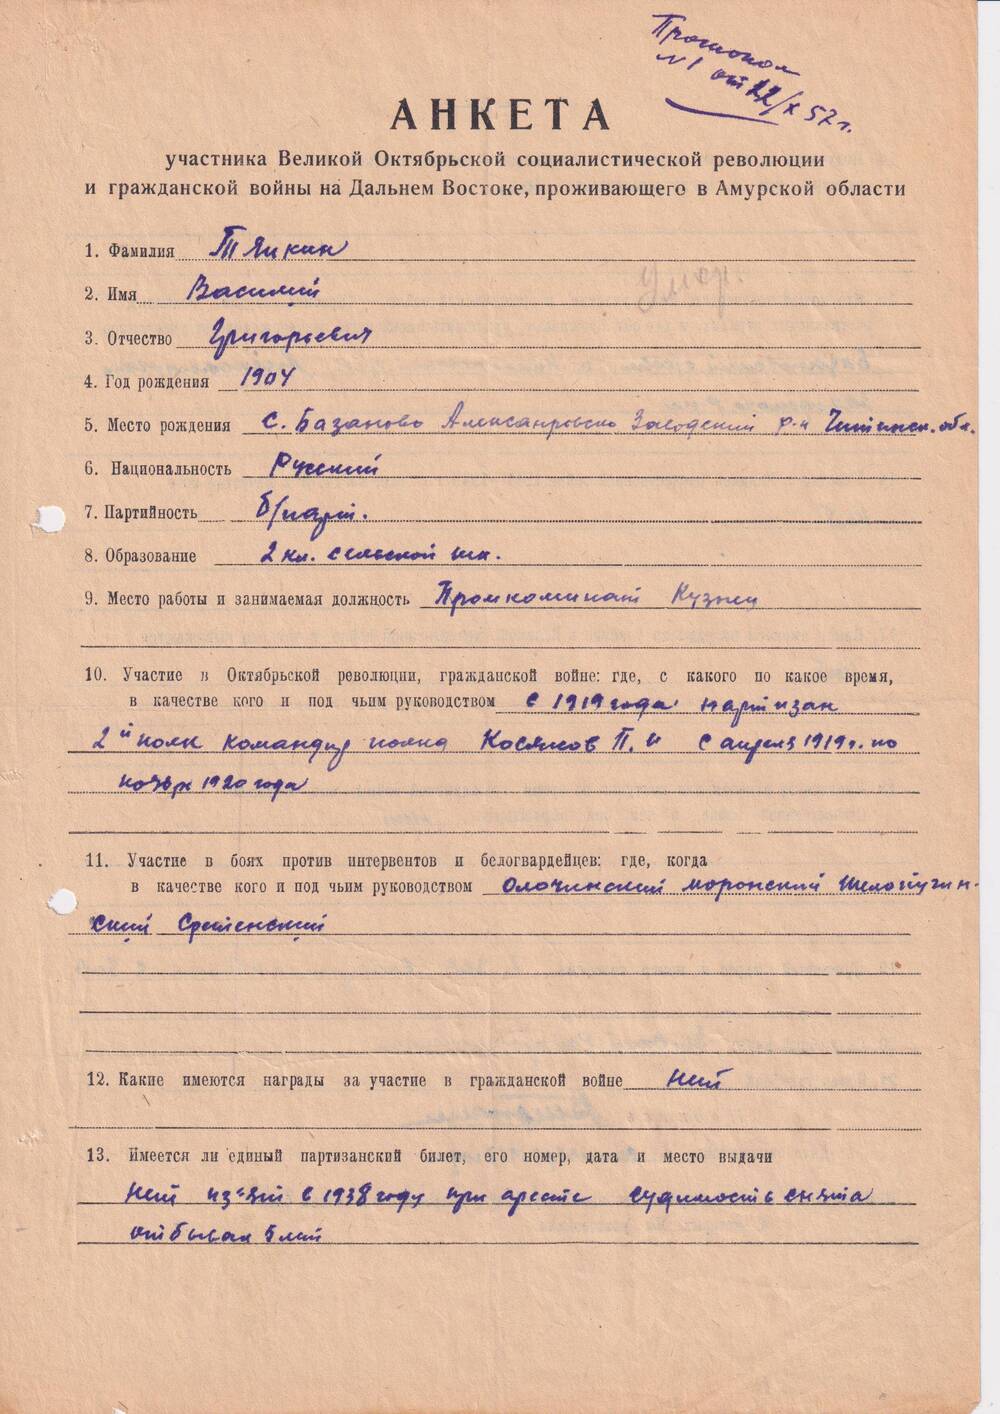 Анкета Тяпкина Василия Григорьевича, участника партизанского движения  с апреля  1919 по ноябрь 1920 года.